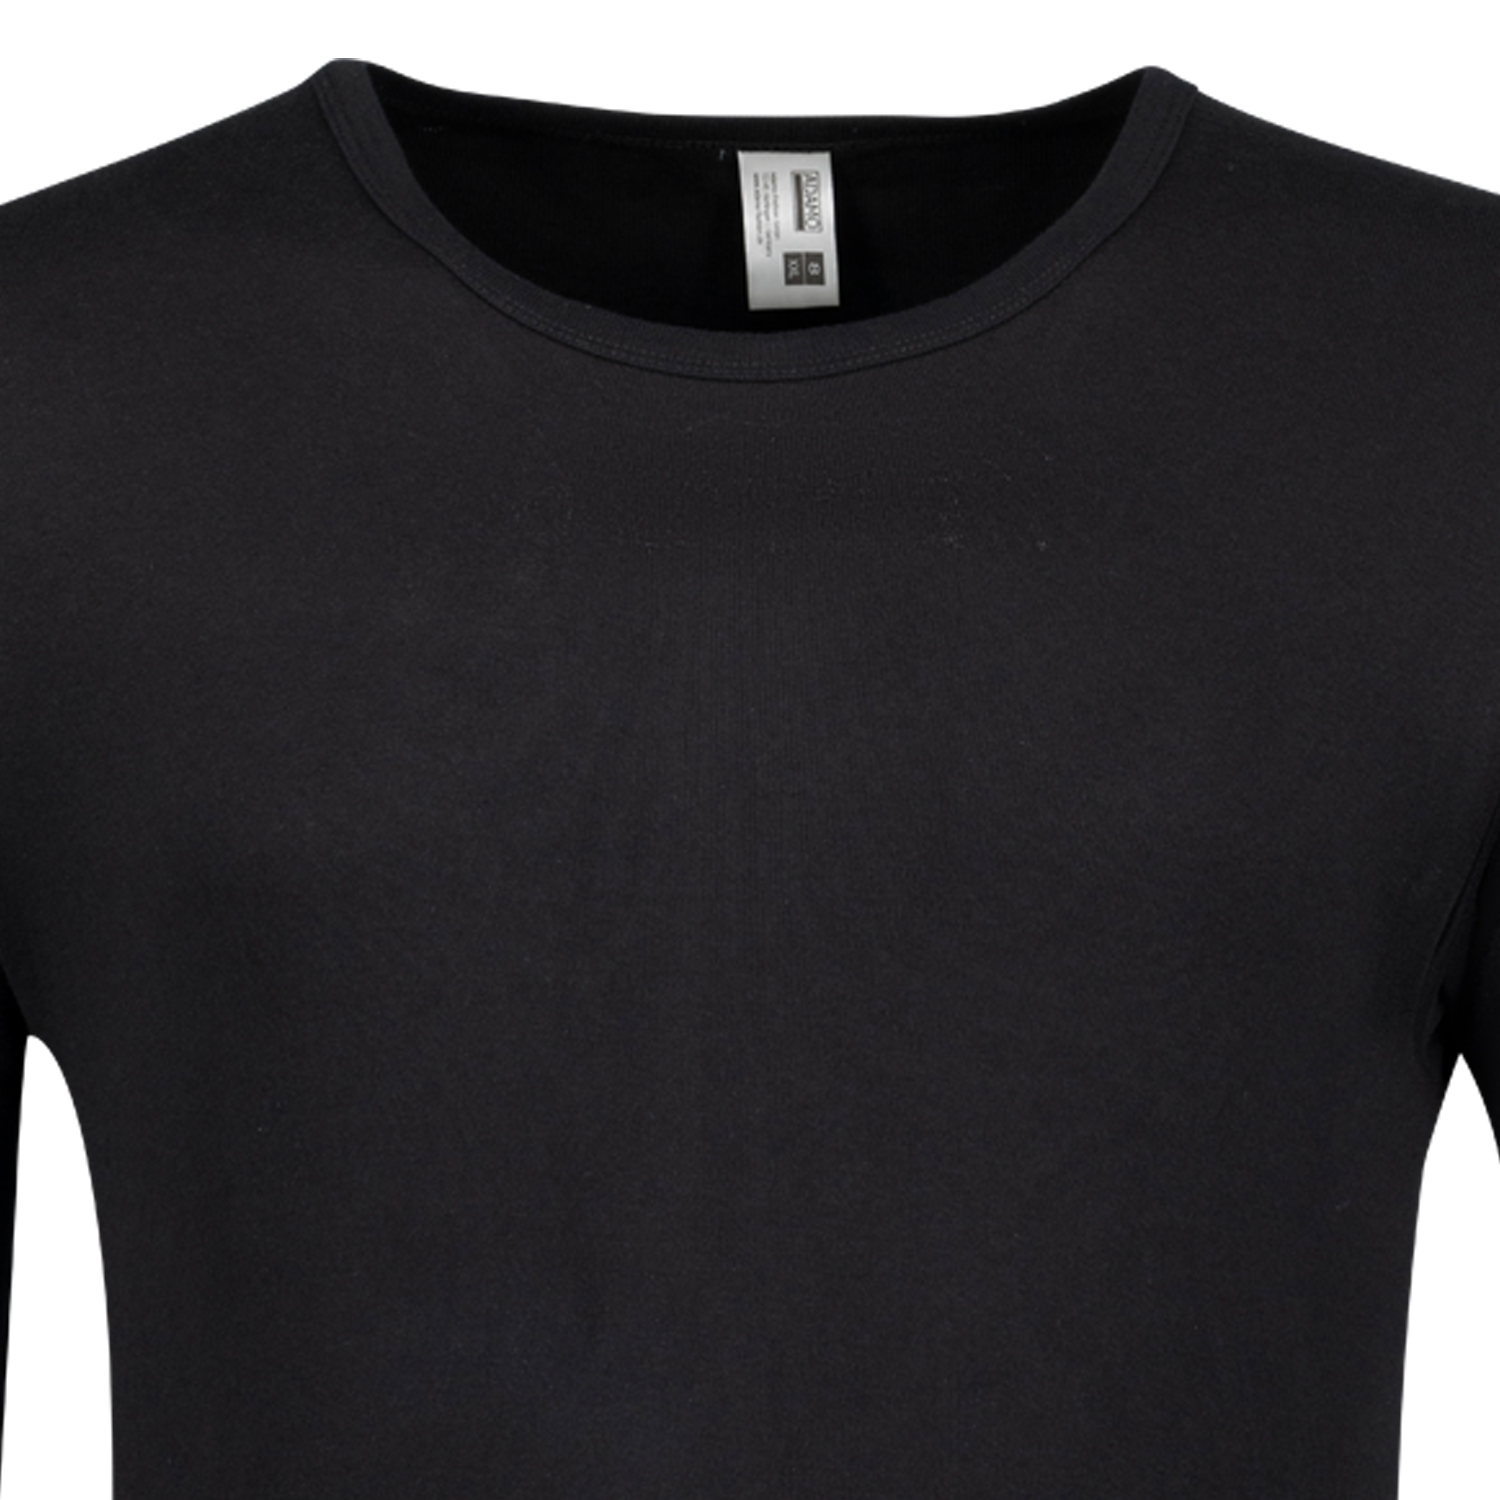 Langärmliges Feinripp Unterhemd ROYAL in schwarz von ADAMO bis Übergröße 20